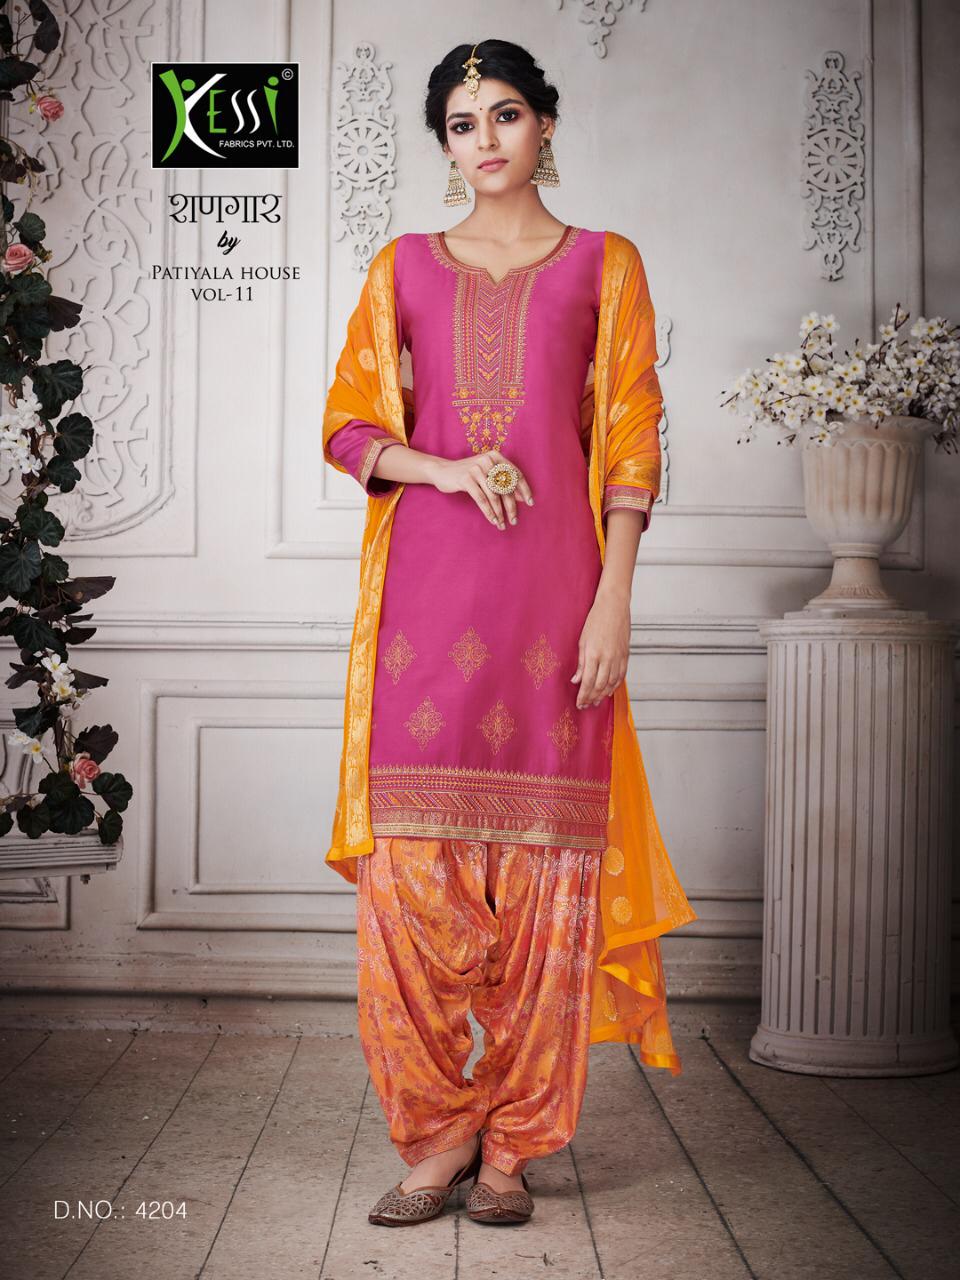 Kessi Fabrics shanghar by patiala vol 11 cotton salwar kameez collection